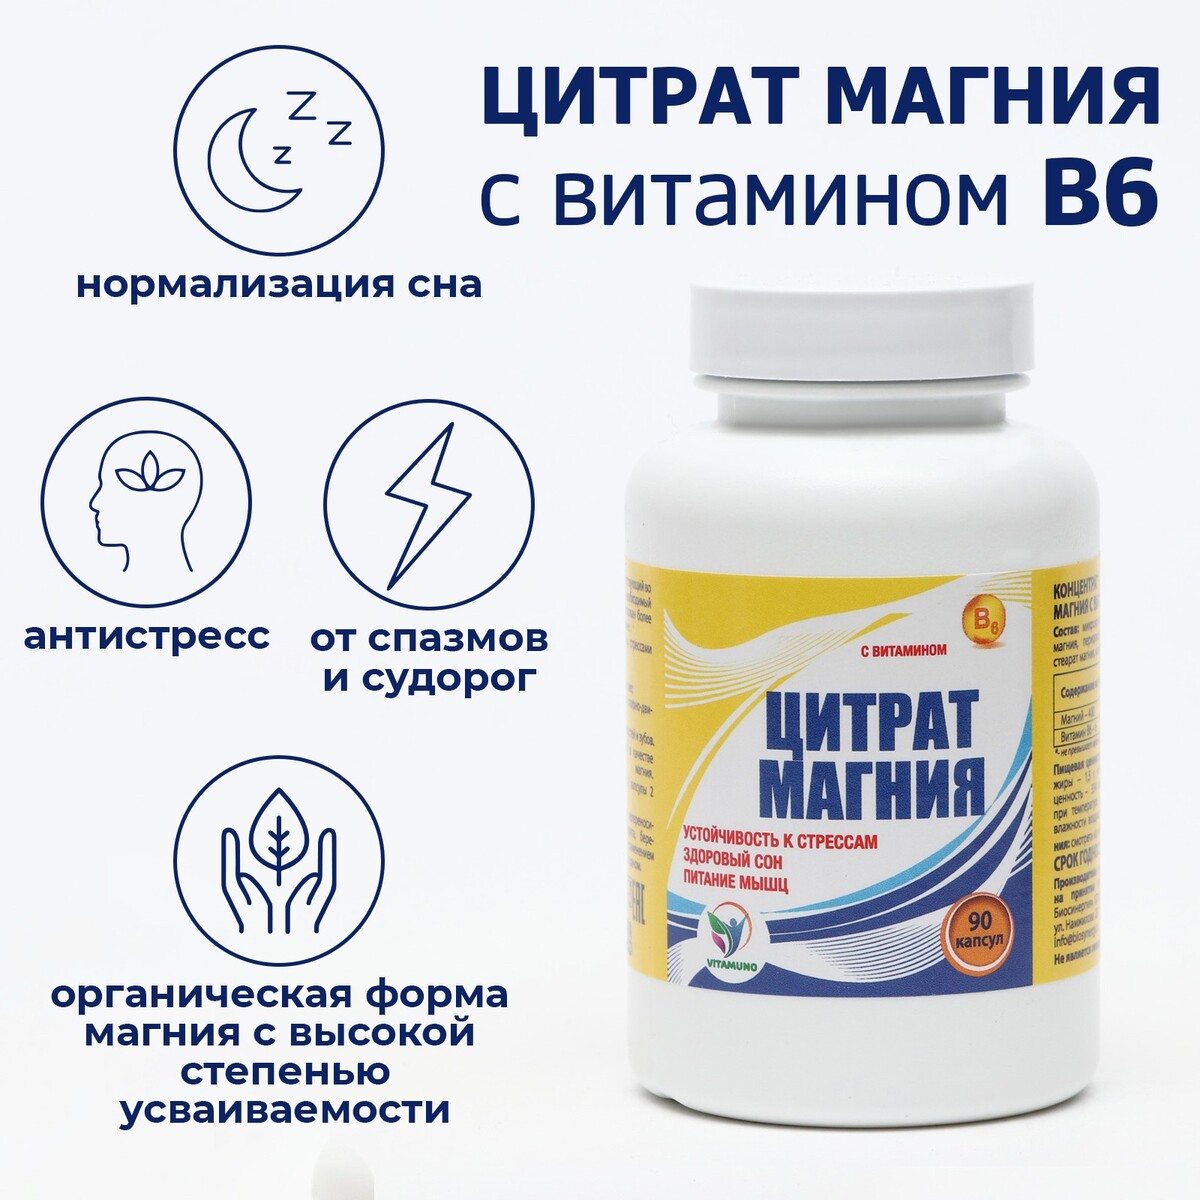 Цитрат магния с витамином в6 vitamuno, для борьбы со стрессом и усталостью, 90 капсул витамин е плюс 60 капсул по 350 мг